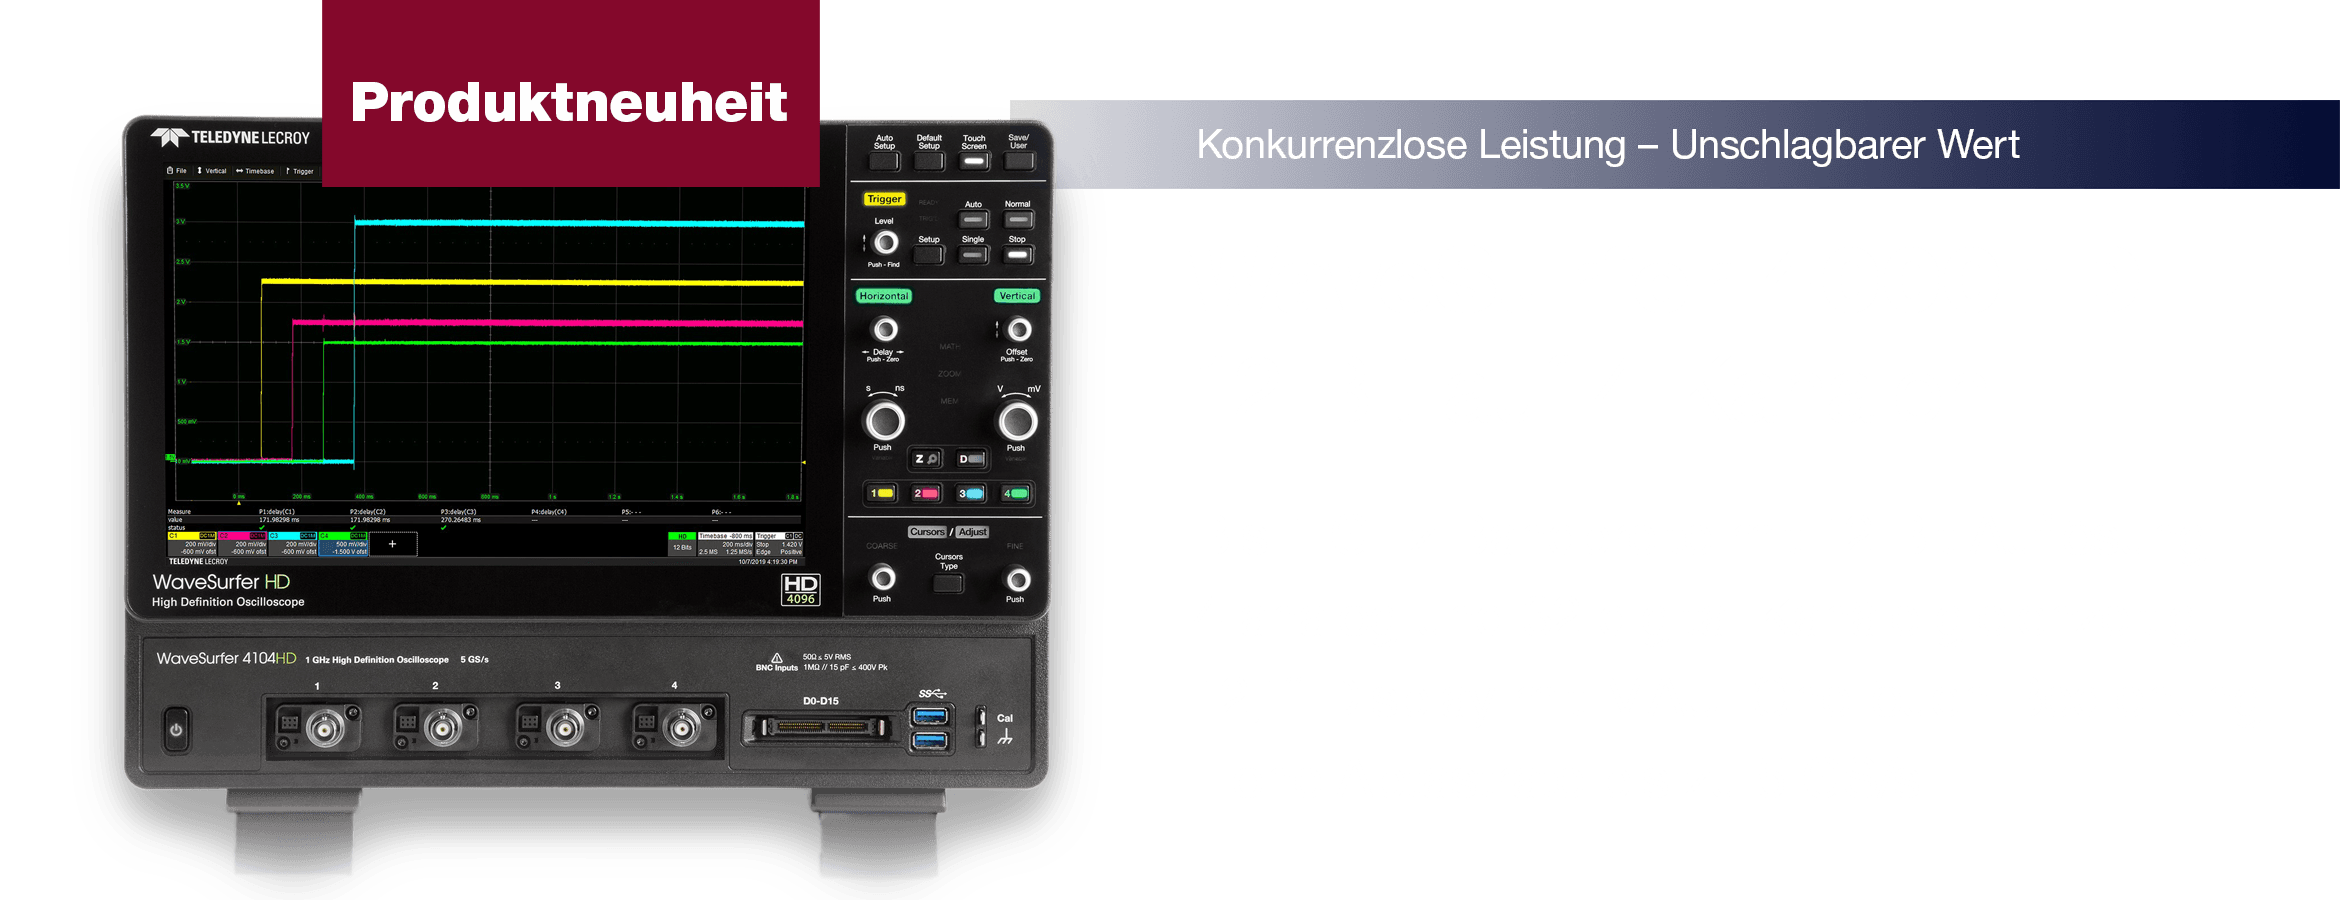 Banner WaveSurfer 4000HD 12 Bit auf 4 Kanälen